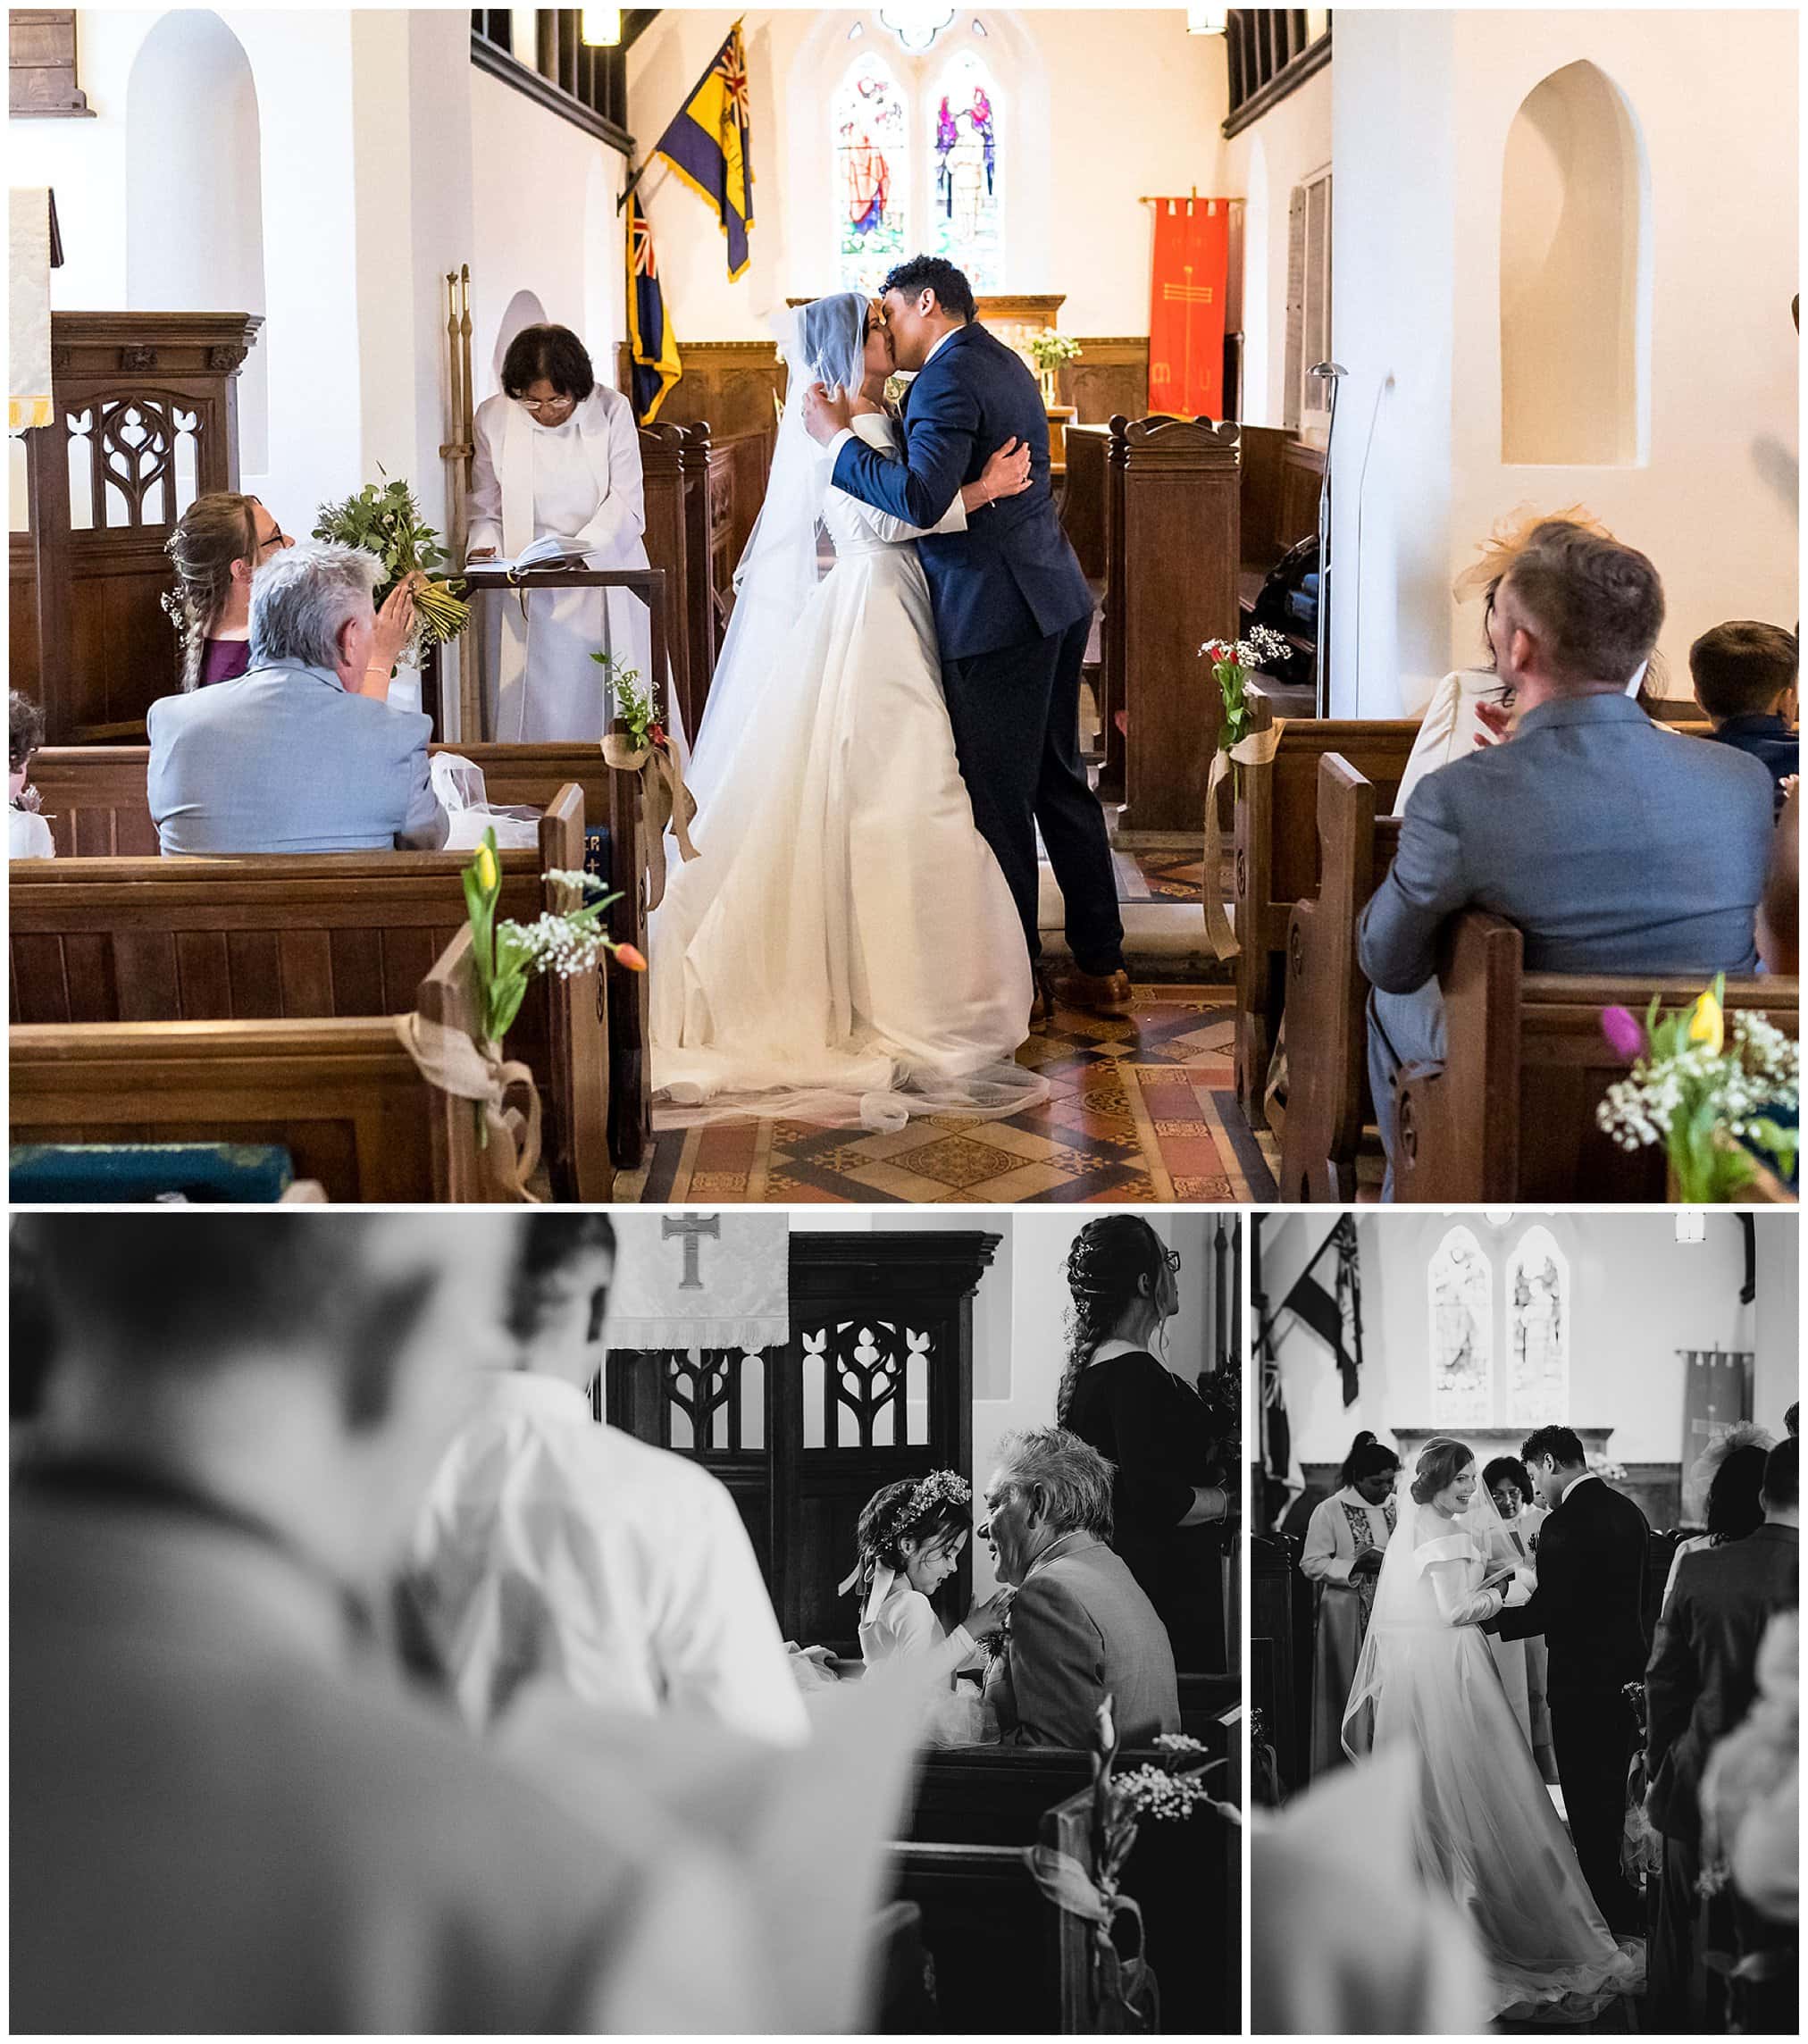 First Kiss at a church wedding.